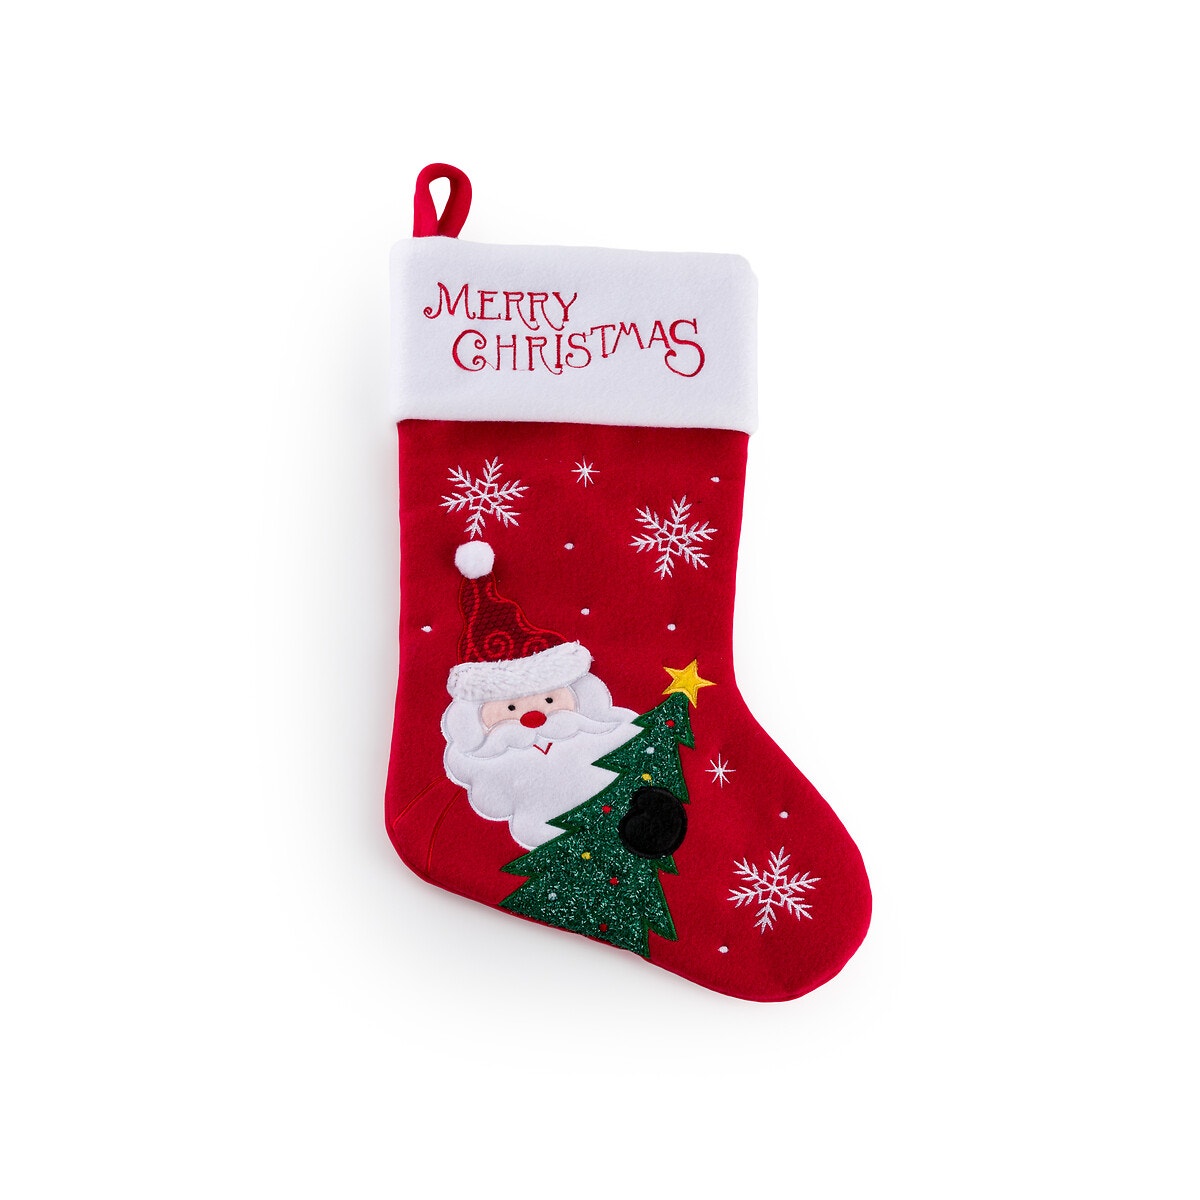 Σπίτι > Διακόσμηση > Διακοσμητικά αντικείμενα > Χριστουγεννιάτικη διακόσμηση > Χριστουγεννιάτικες διακοσμητικές κάλτσες Χριστουγεννιάτικη διακοσμητική κάλτσα